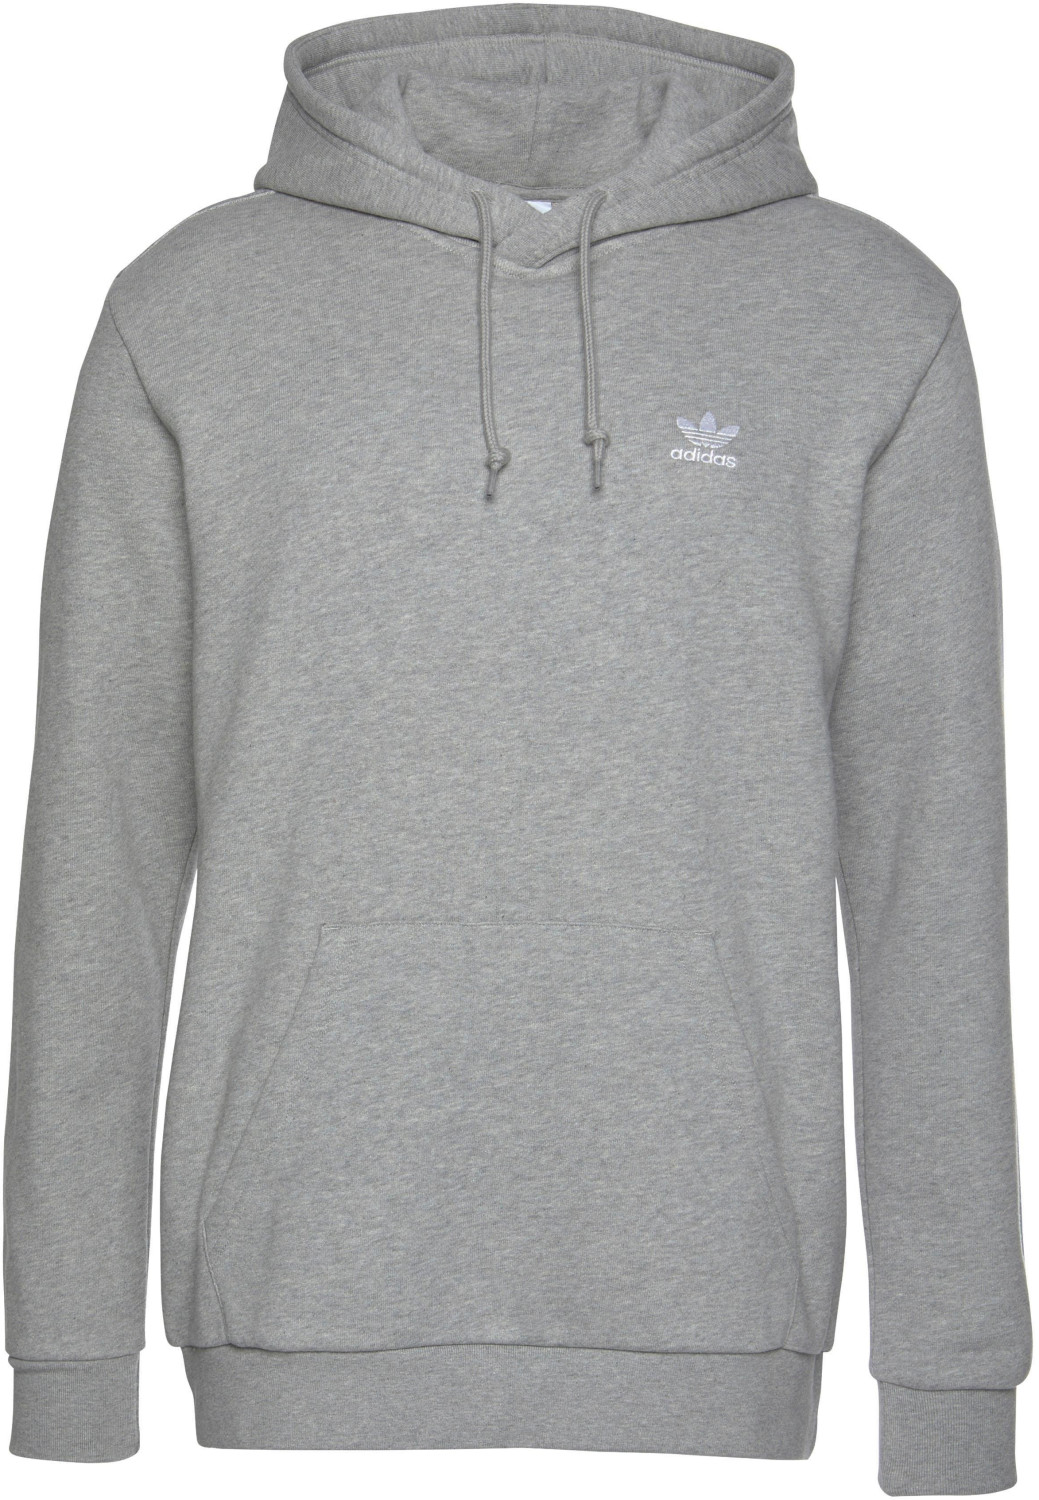 Adidas LOUNGEWEAR ab Essentials 30,00 bei € | Trefoil grey Preisvergleich heather Hoodie medium